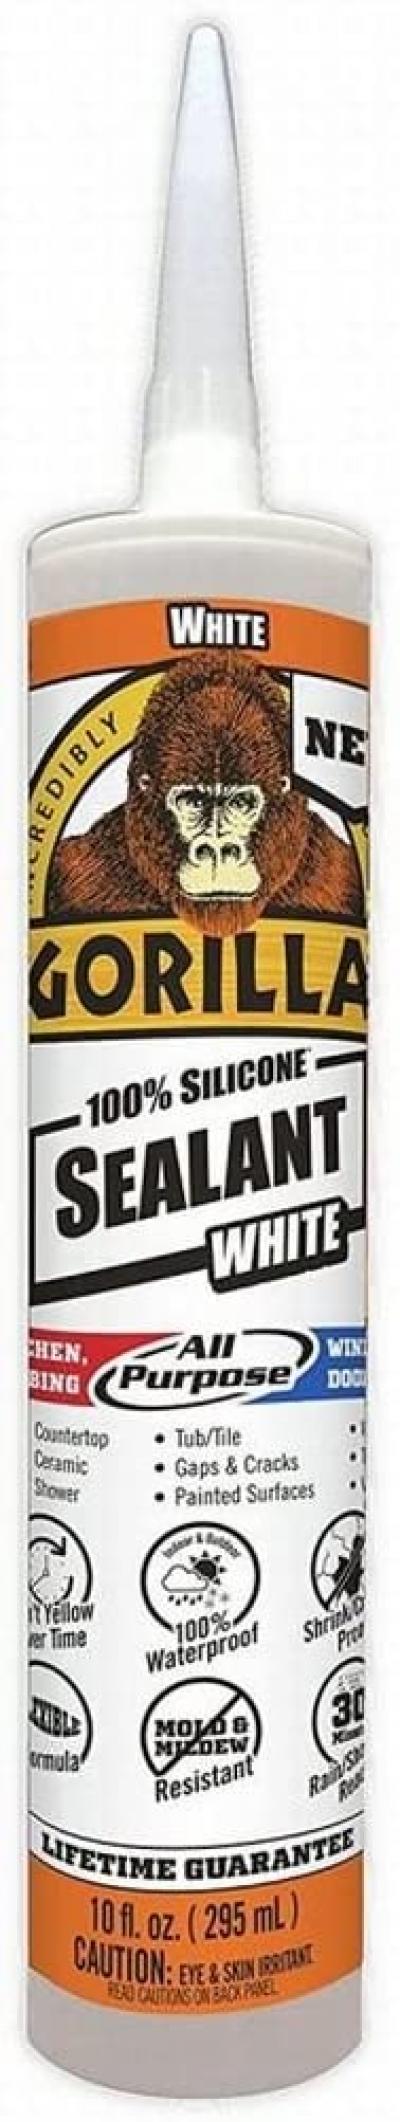 Gorilla Silicone White Sealant 10oz.